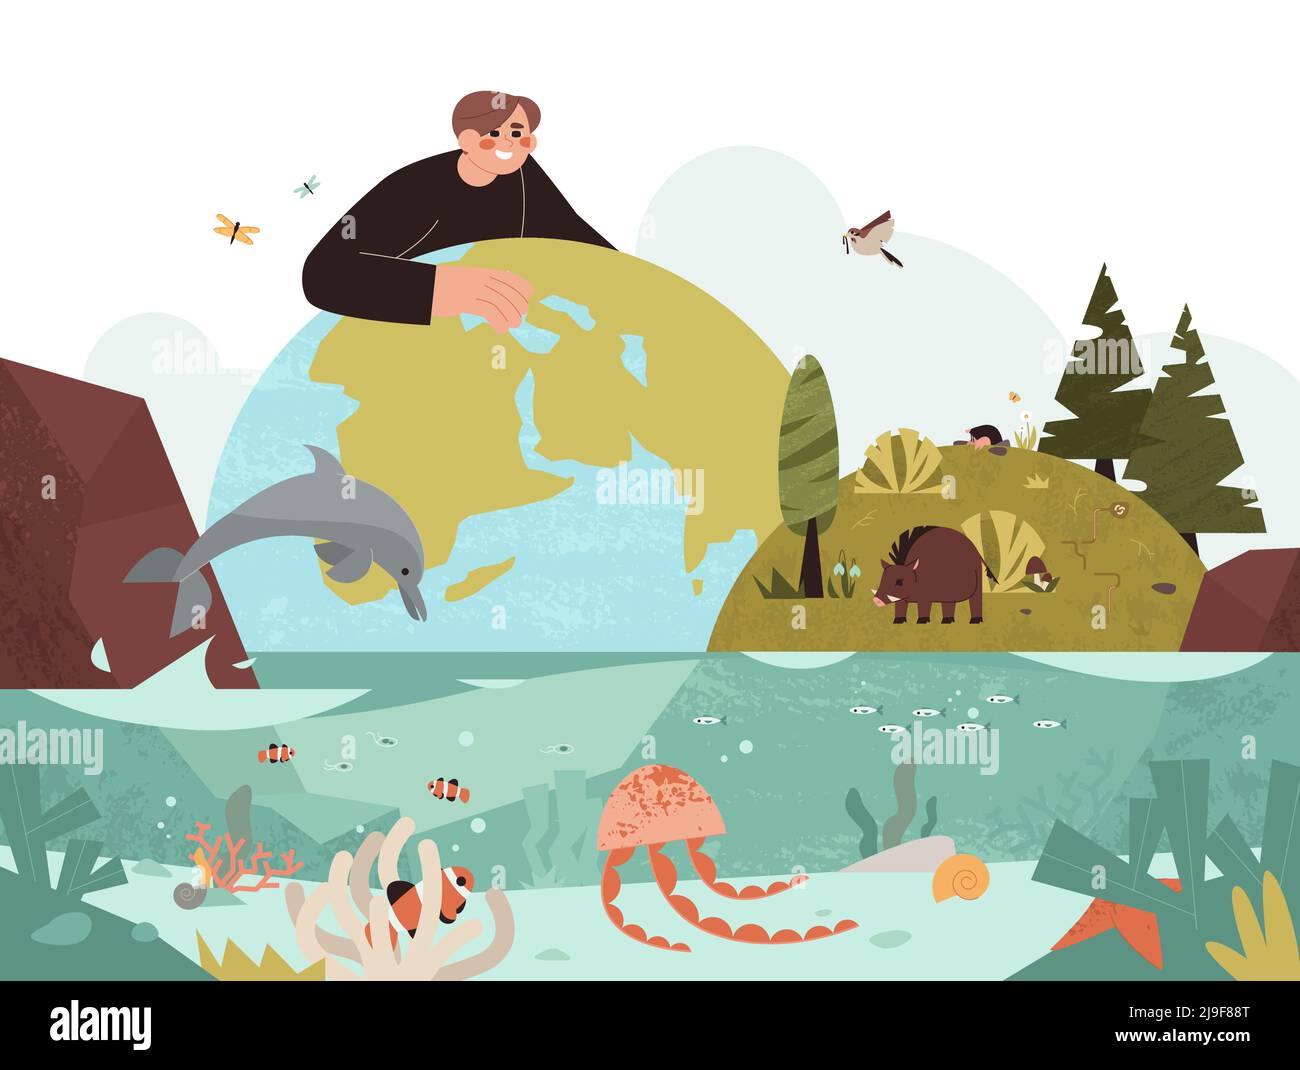 Illustrazione vettoriale piatta della biodiversità e della protezione della natura. L'uomo Ecologista protegge diversi tipi di habitat e specie biologiche di piante, uccelli, animali e la vita marina oceanica sul pianeta terra. Illustrazione Vettoriale